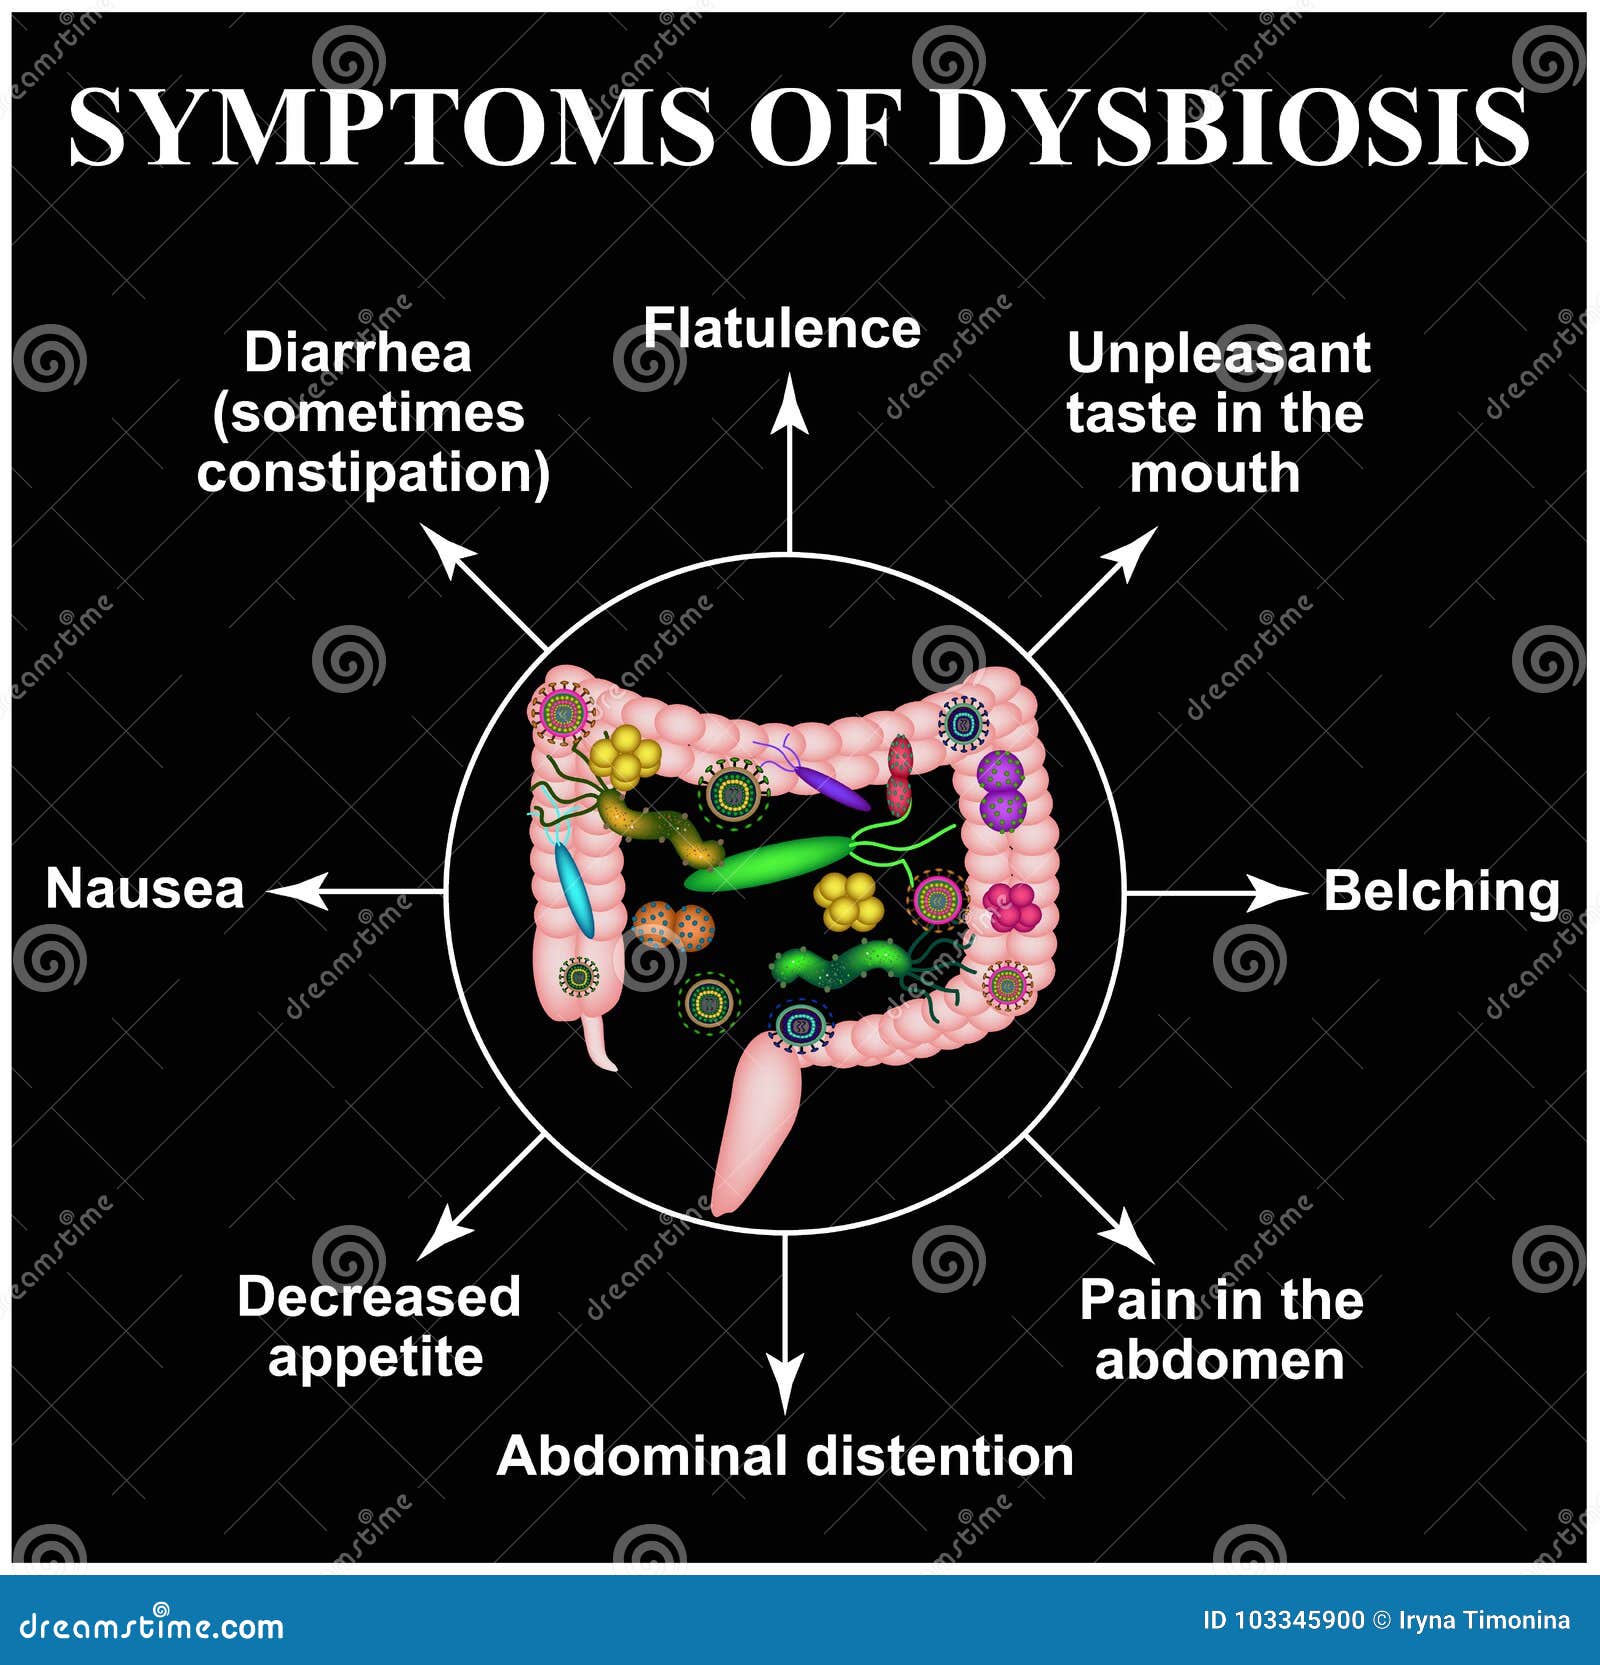 dysbiosis pain